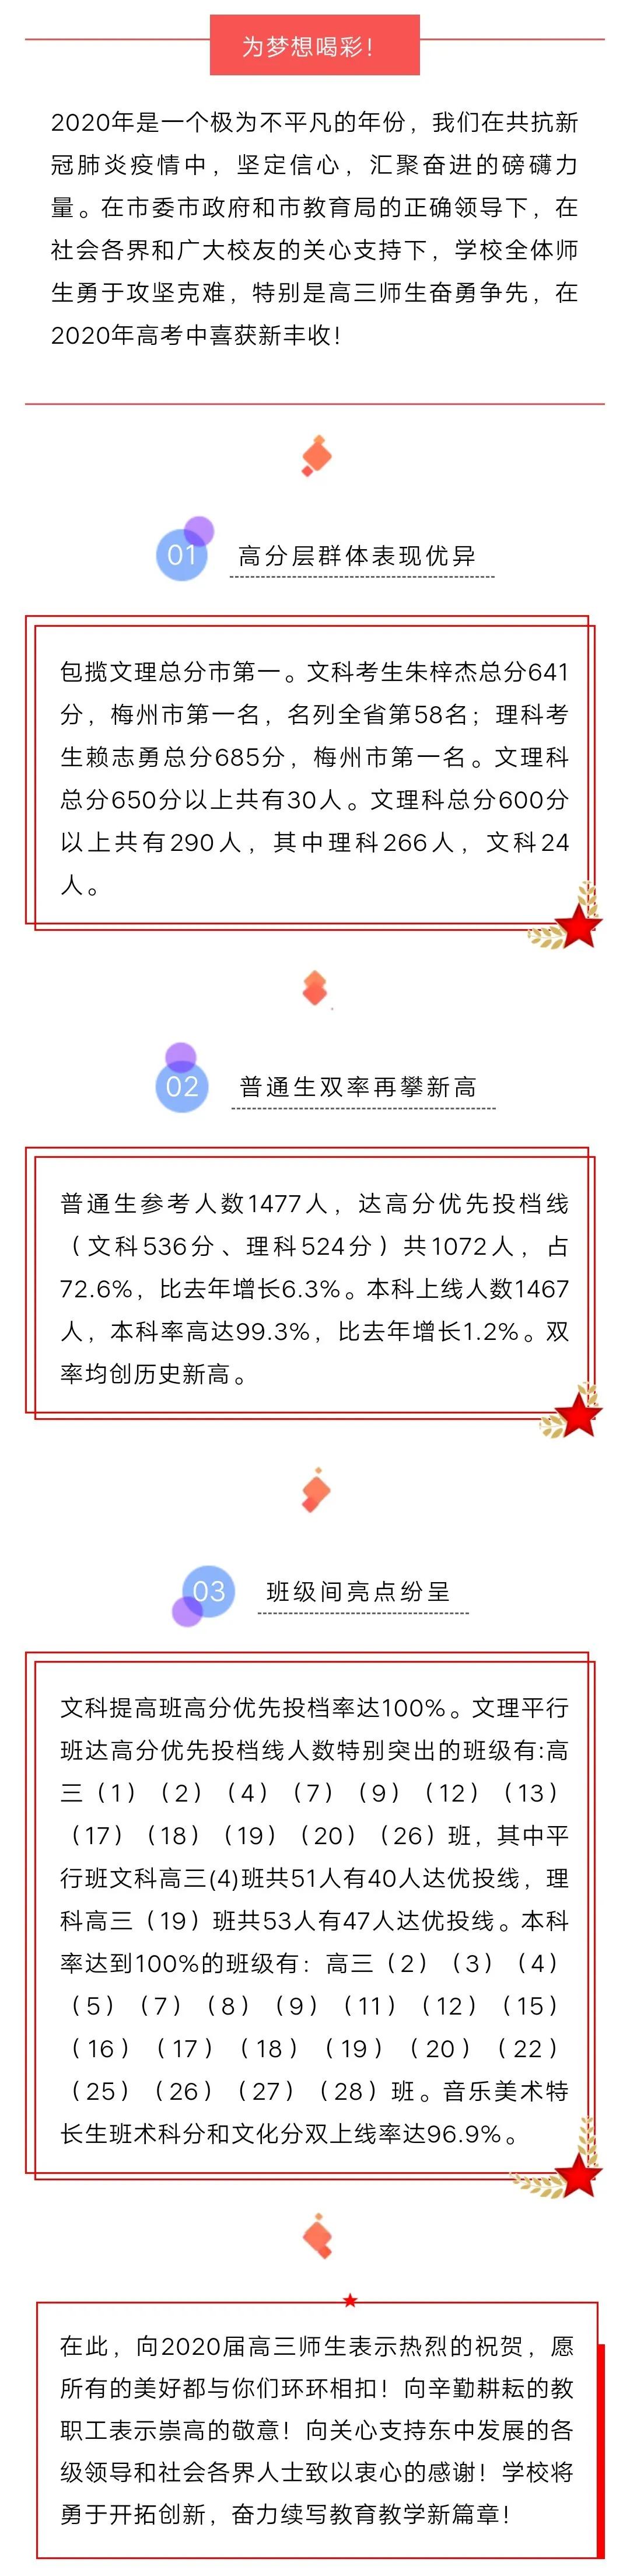 目前最全 深圳各高中高考喜报 含广东省内部分高中 及近三年优投率 全省